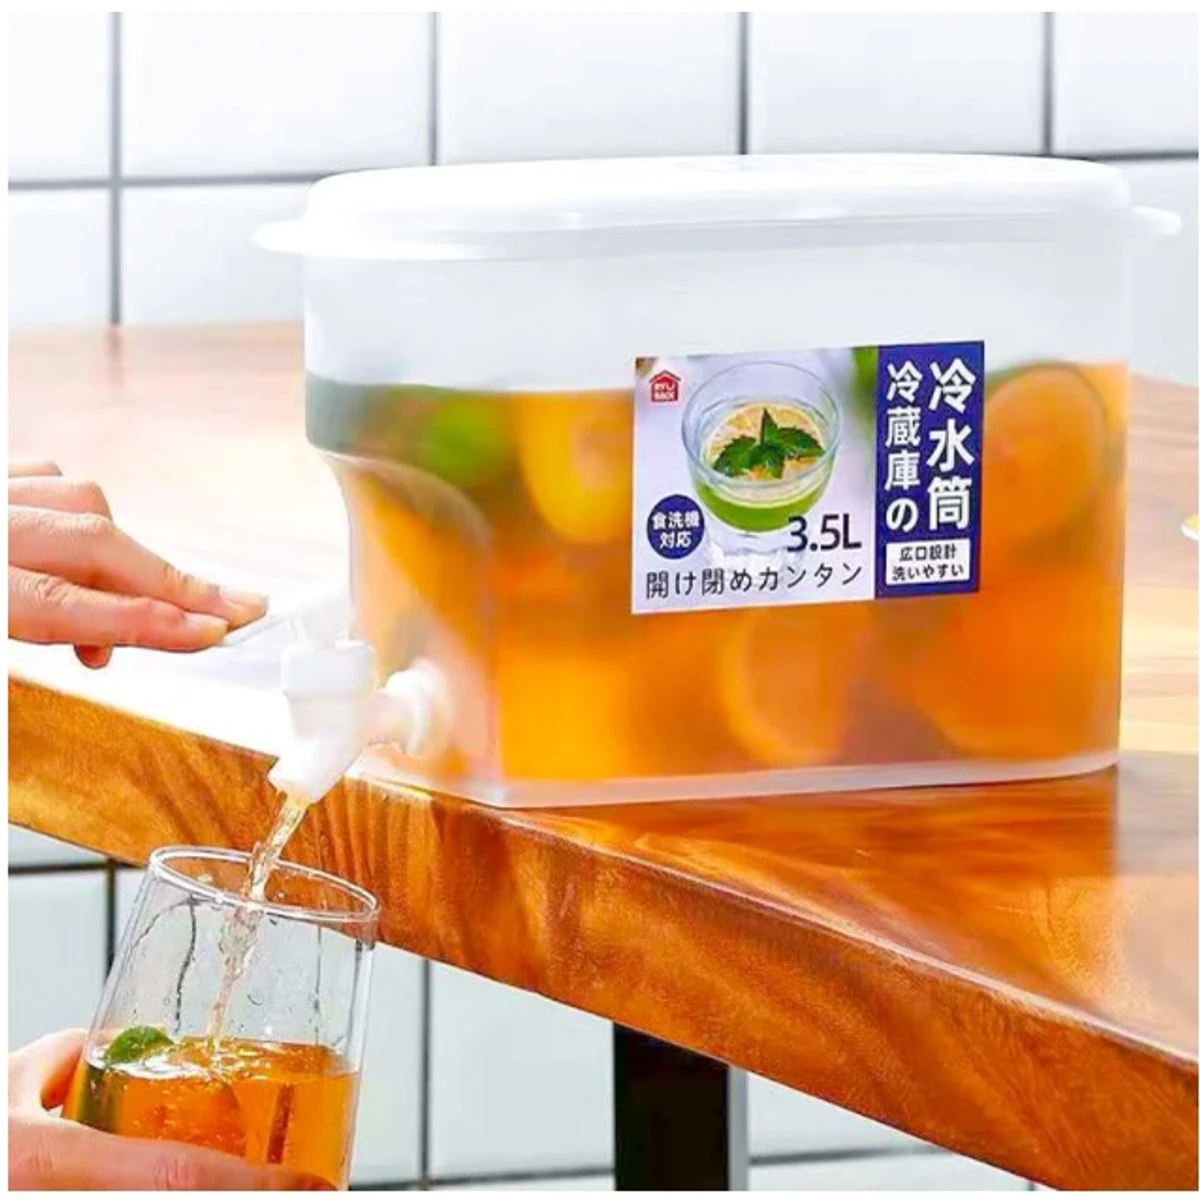 Juice jar Easy Fit in Refrigerator PP or Food Grade Plastic